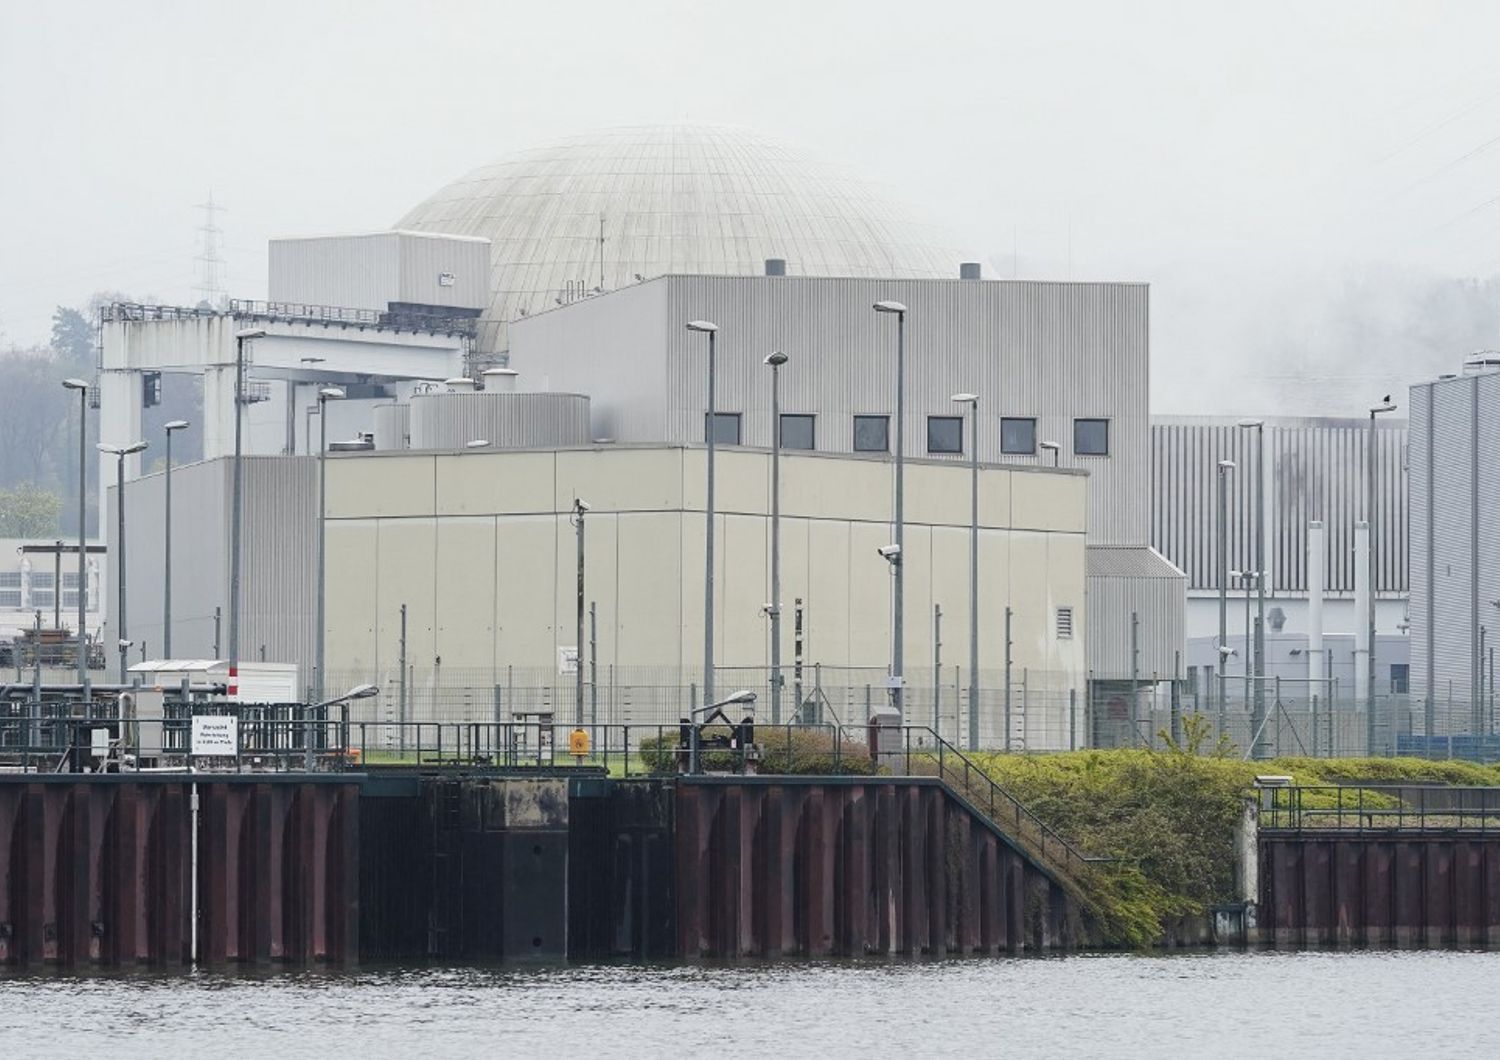 La centrale nucleare di&nbsp;Neckarwestheim